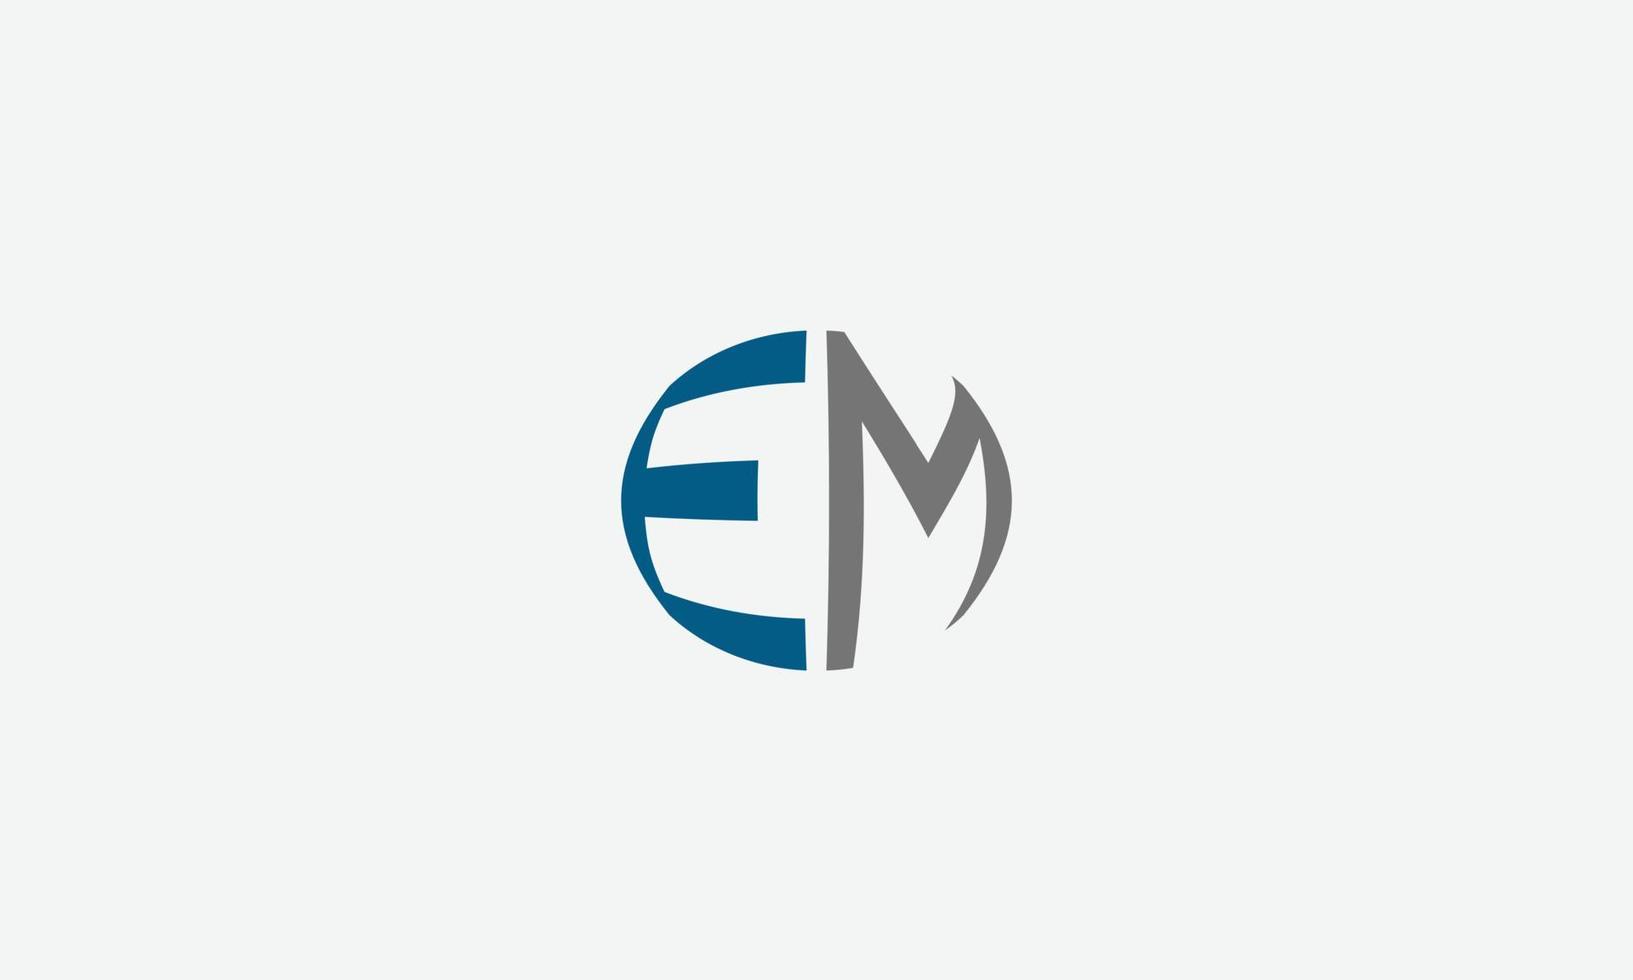 Alphabet letters Initials monogram logo EM, ME, E and M vector